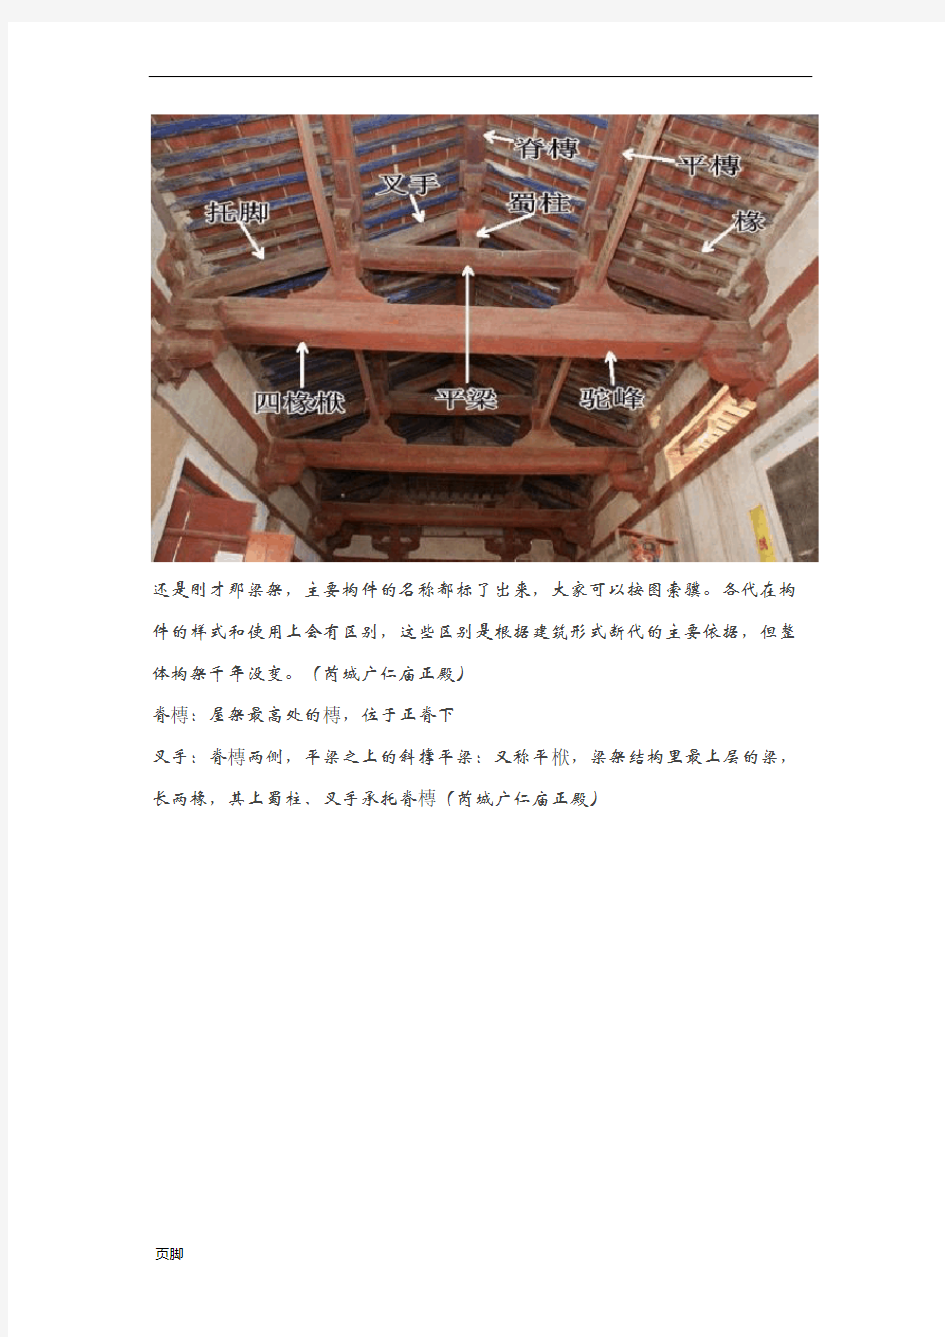 中国古建筑木结构构件详解